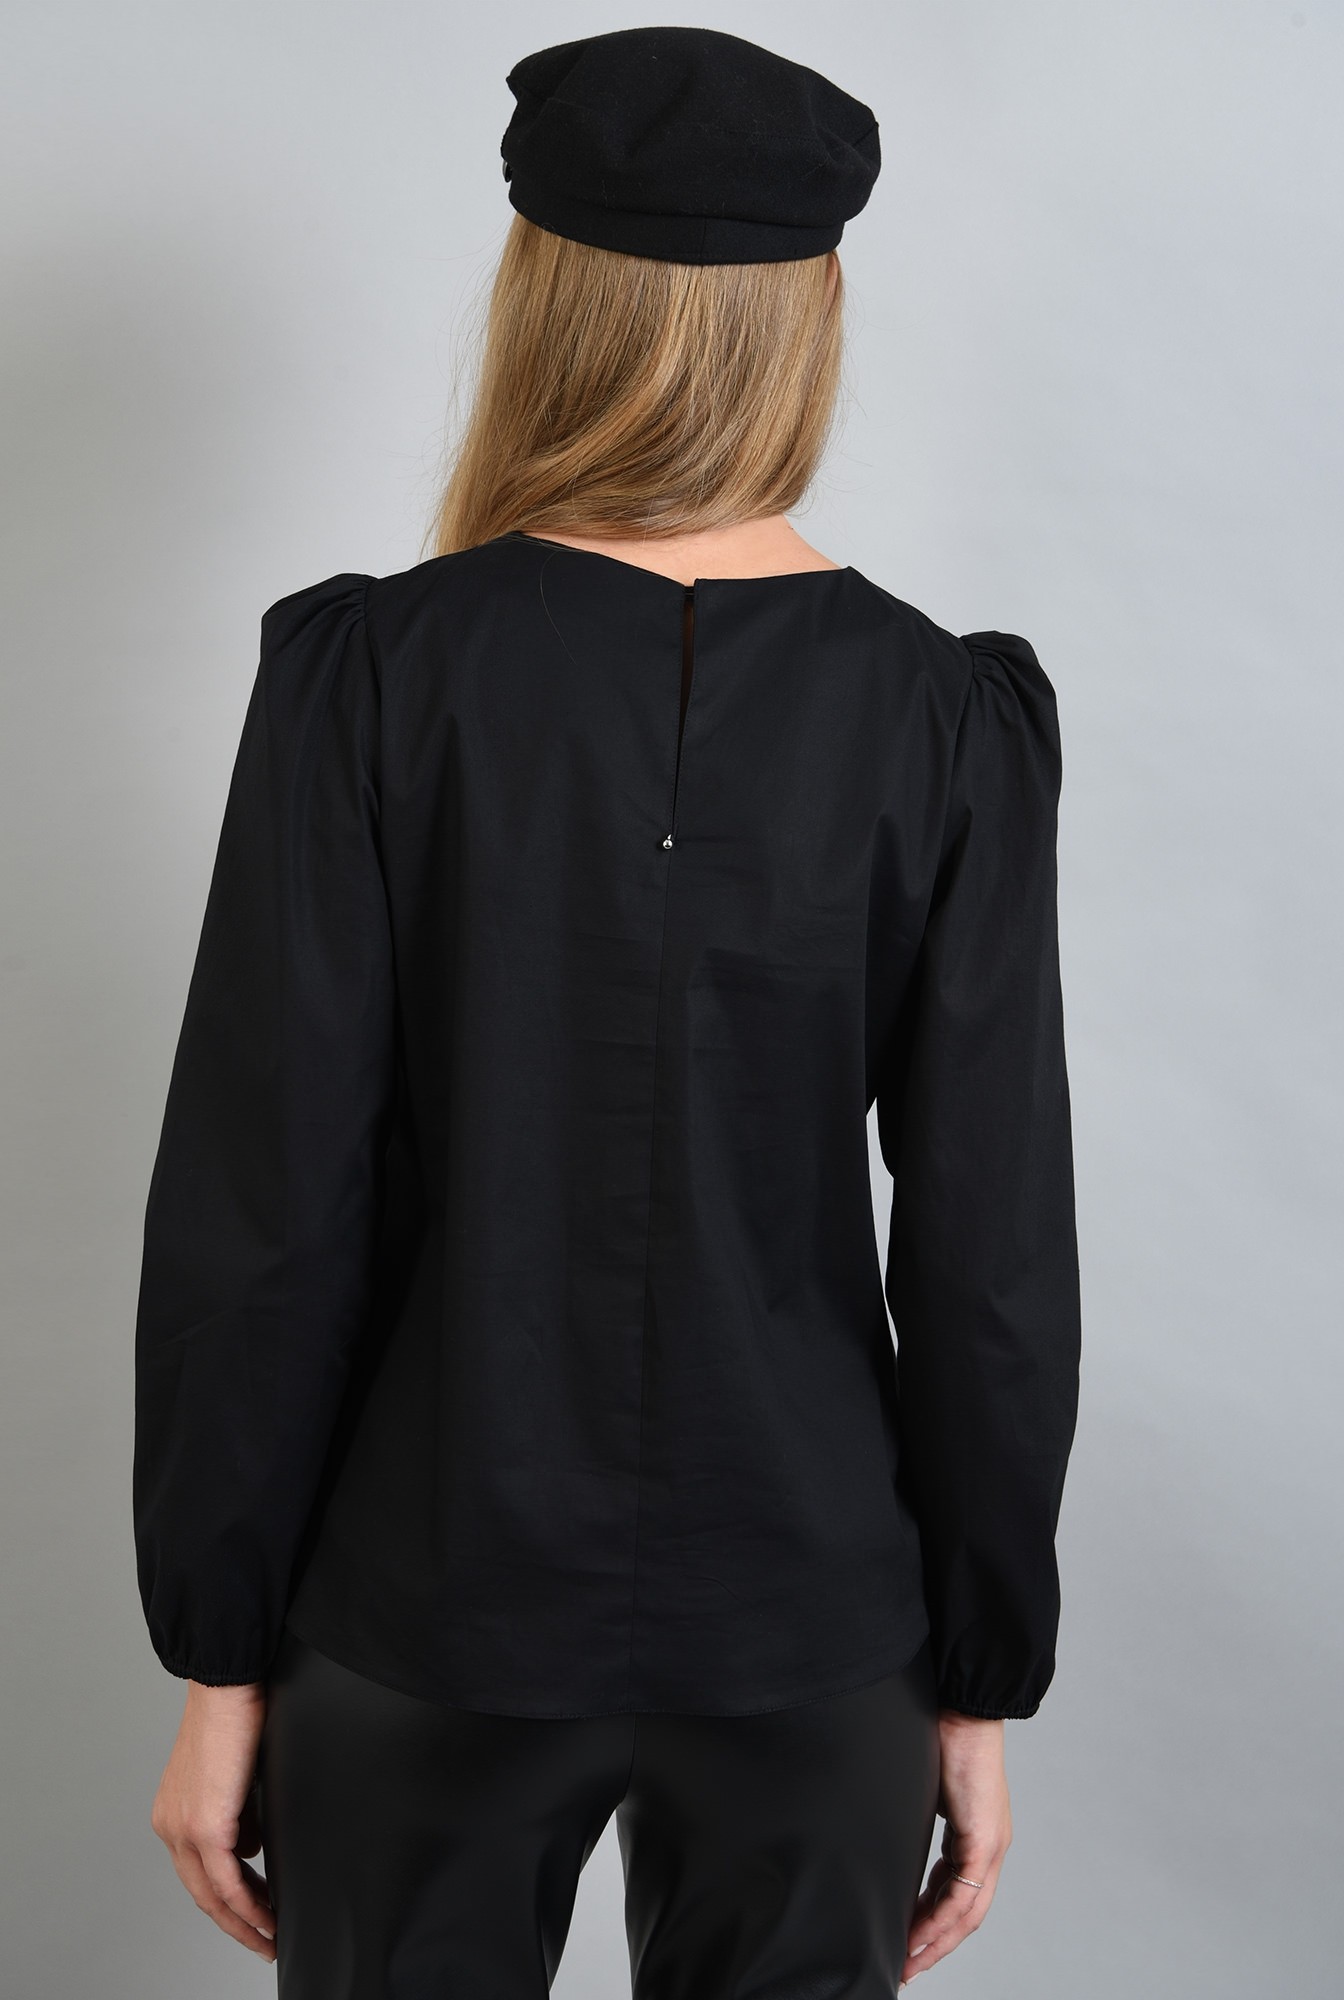 1 - bluza neagra cu funde in contrast, cu maneca accentuata